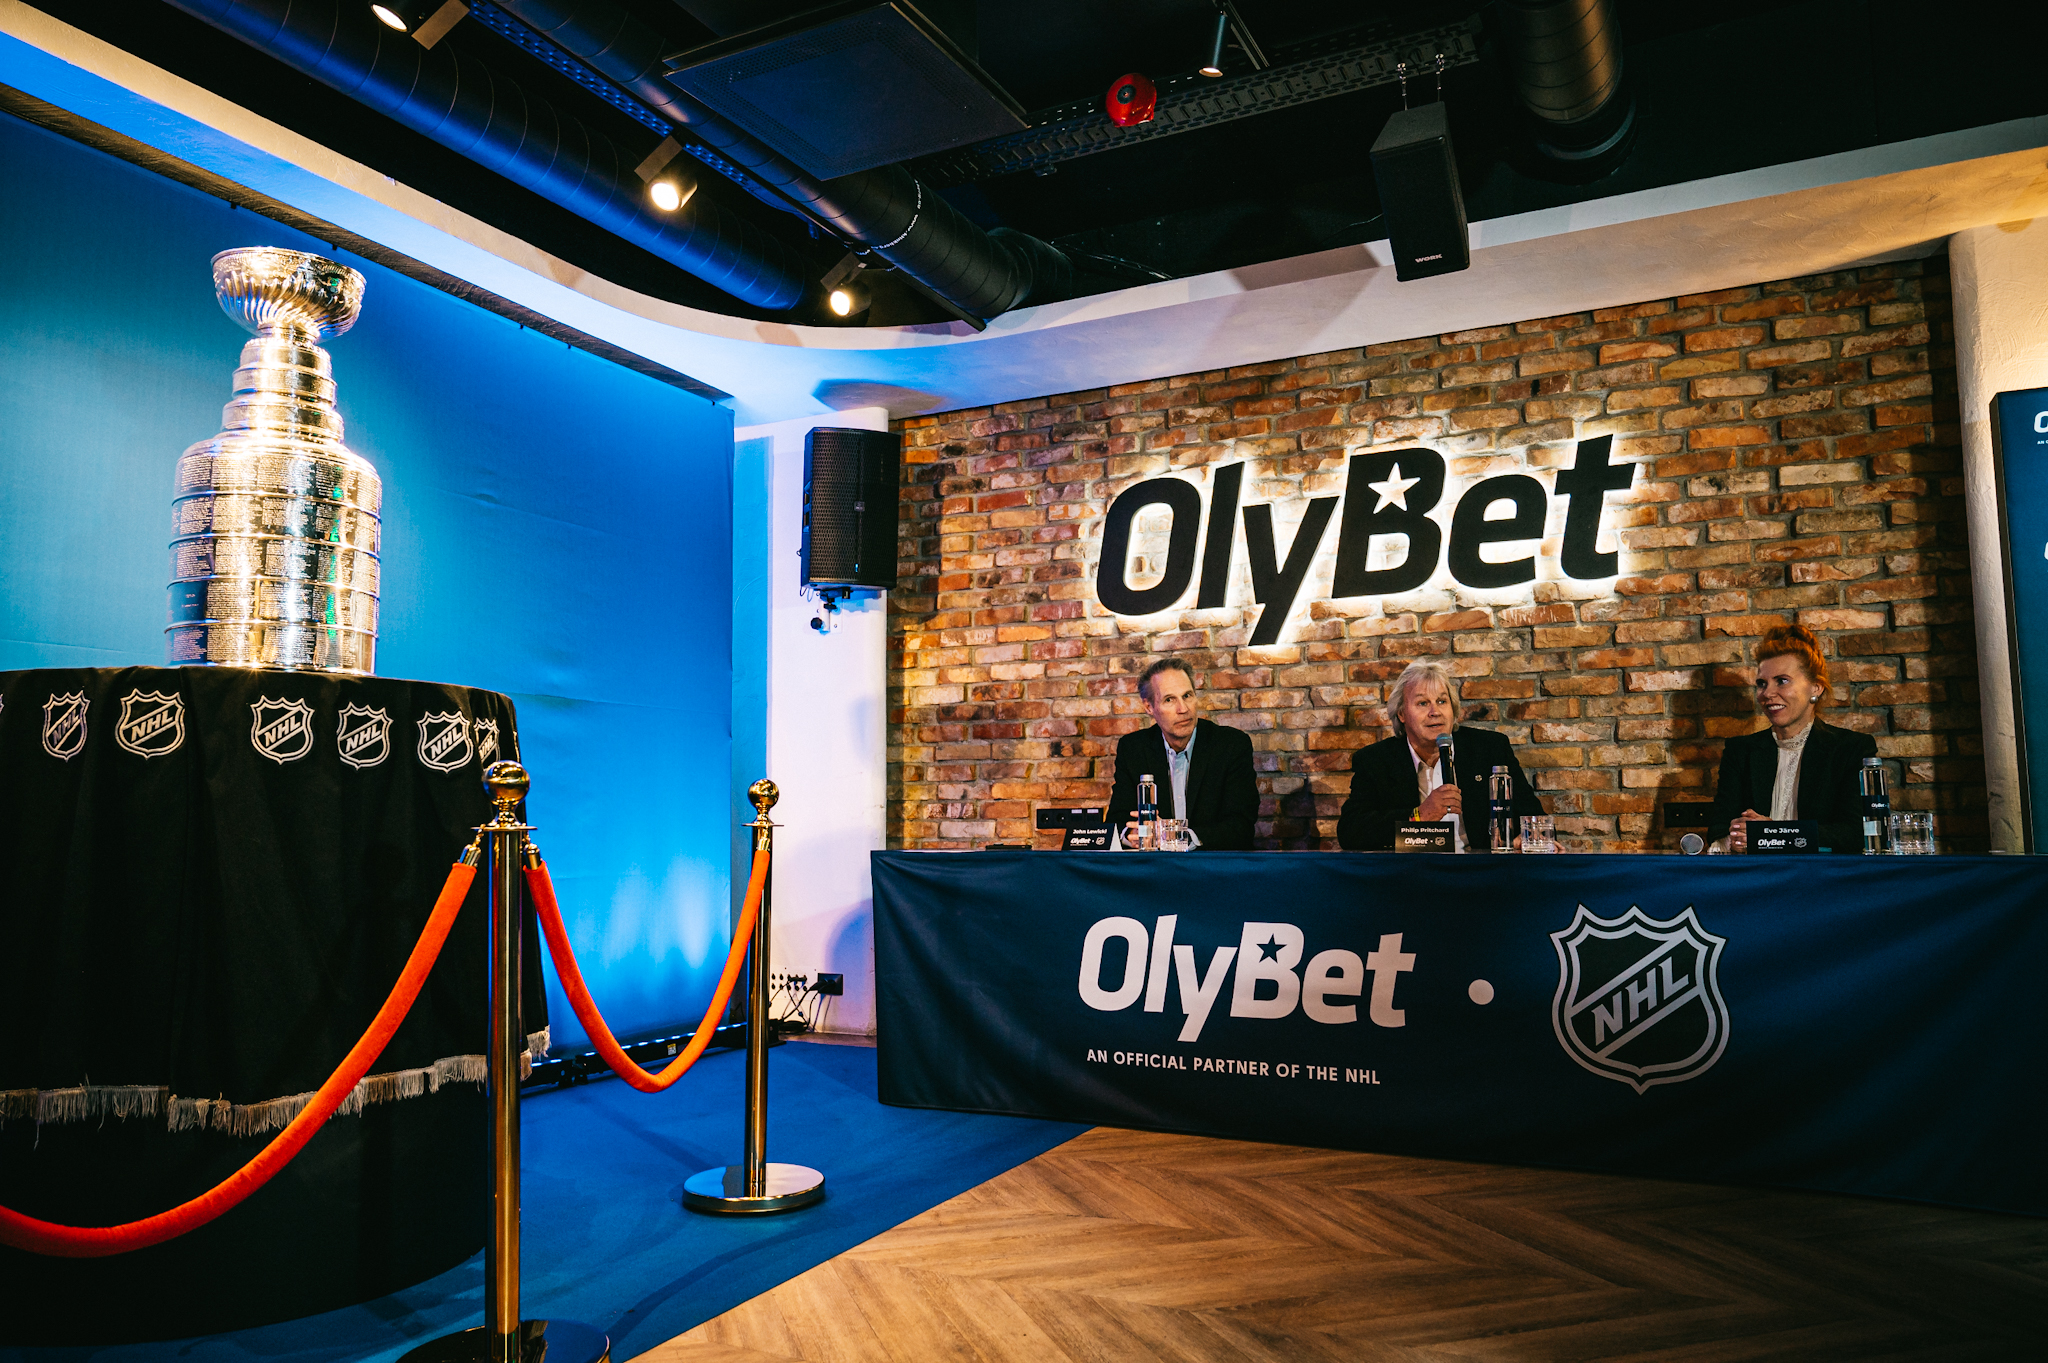 Stanley Cup presentation at OlyBet. Photo by Marek Metslaid